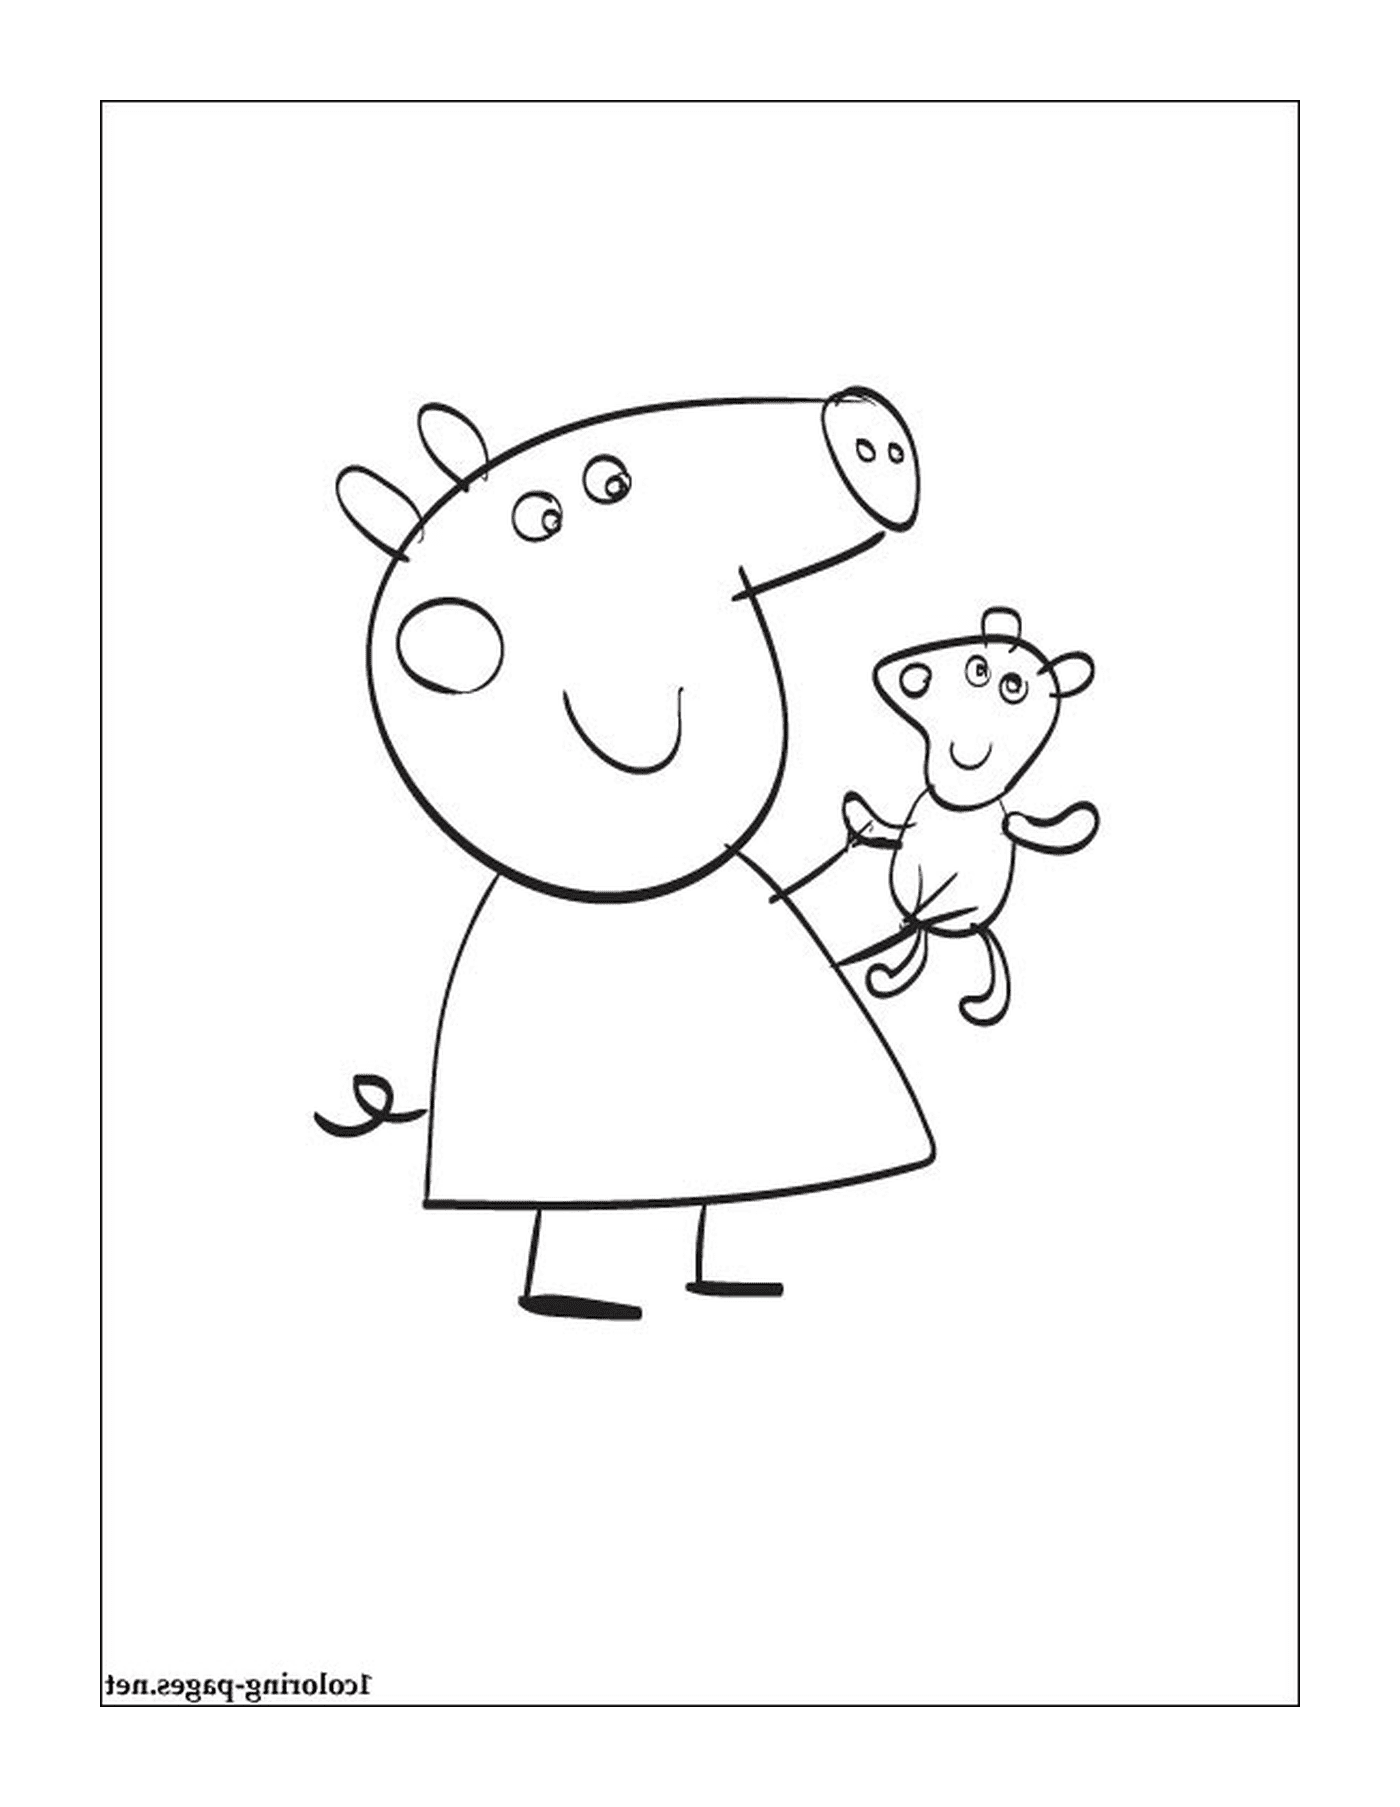  Peppa Pig with a teddy bear 